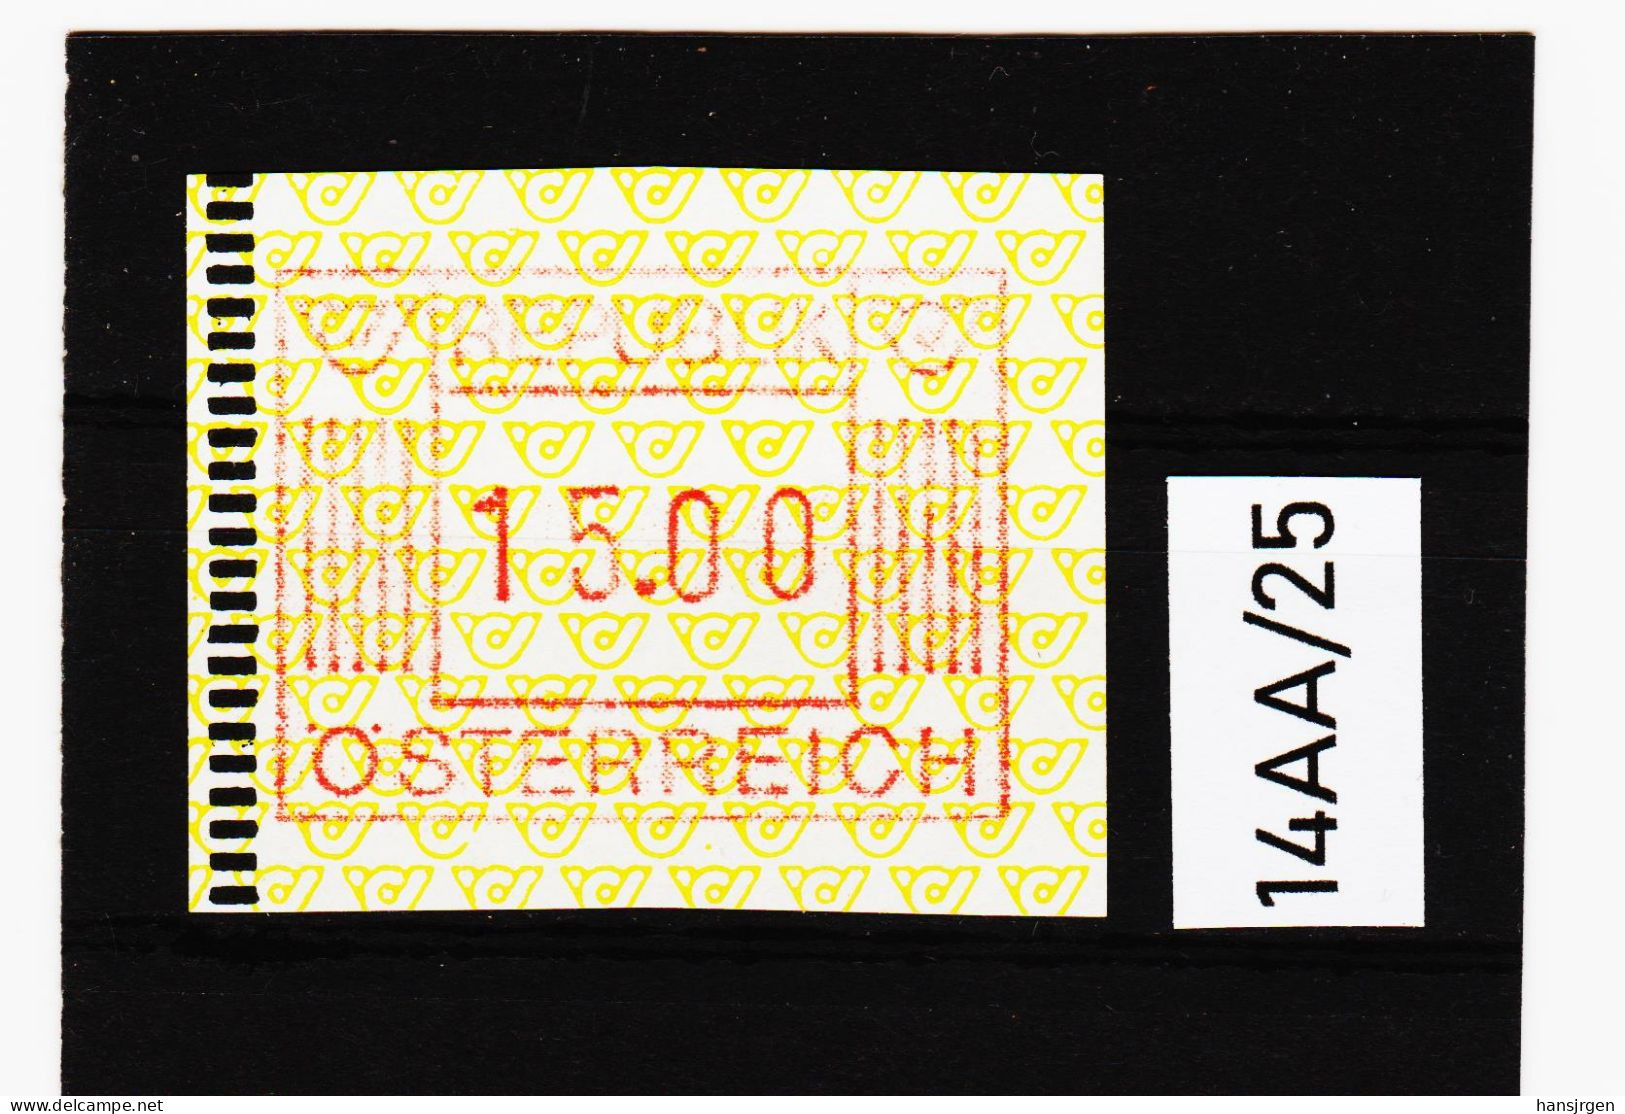 14AA/25  ÖSTERREICH 1983 AUTOMATENMARKEN 1. AUSGABE  15,00 SCHILLING   ** Postfrisch - Machine Labels [ATM]